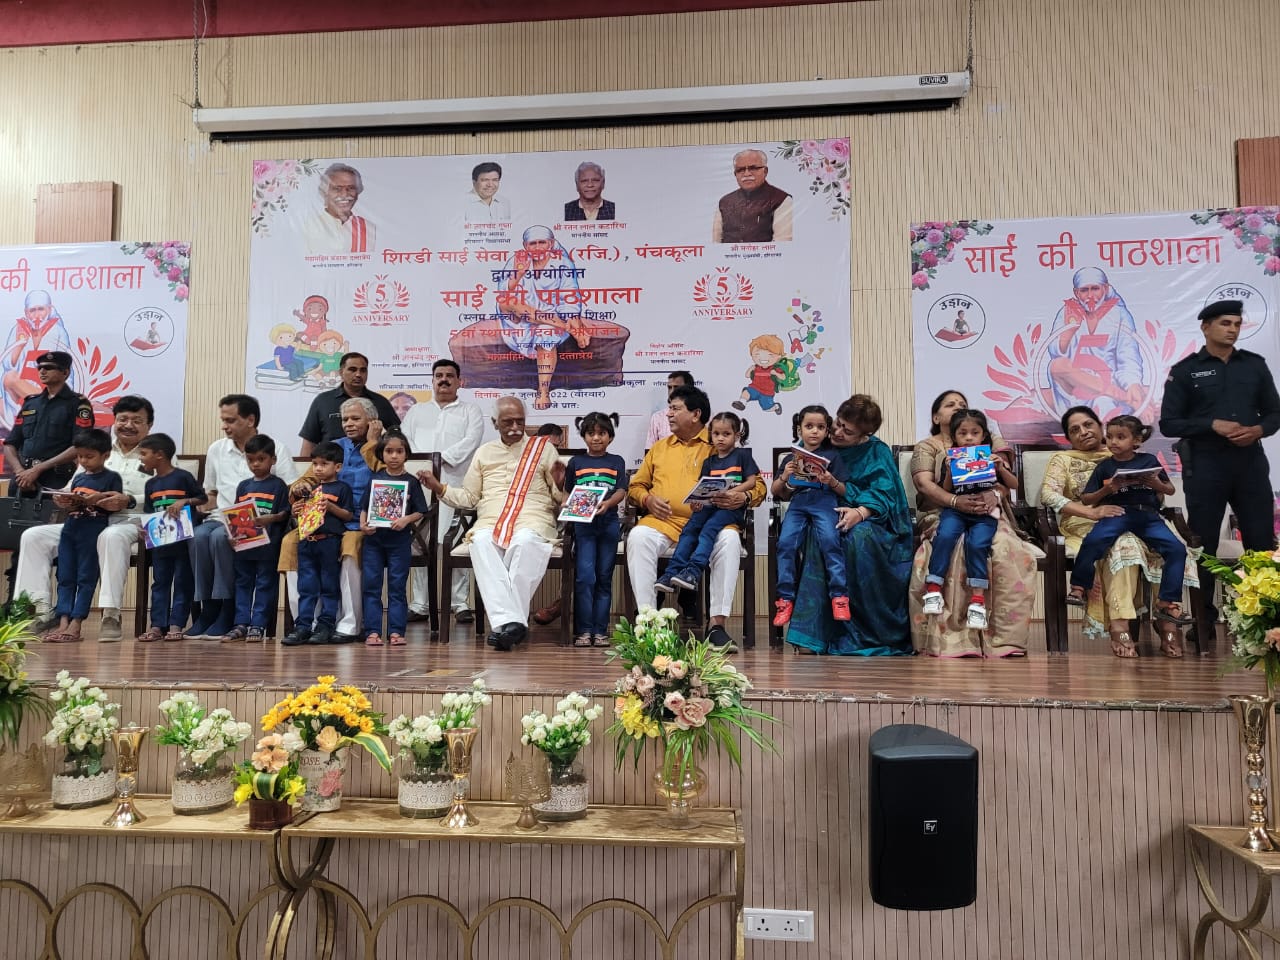 राज्यपाल श्री बंडारू दत्तात्रेय पंचकूला में आयोजित साईं की पाठशाला के 5वें स्थापना दिवस कार्यक्रम